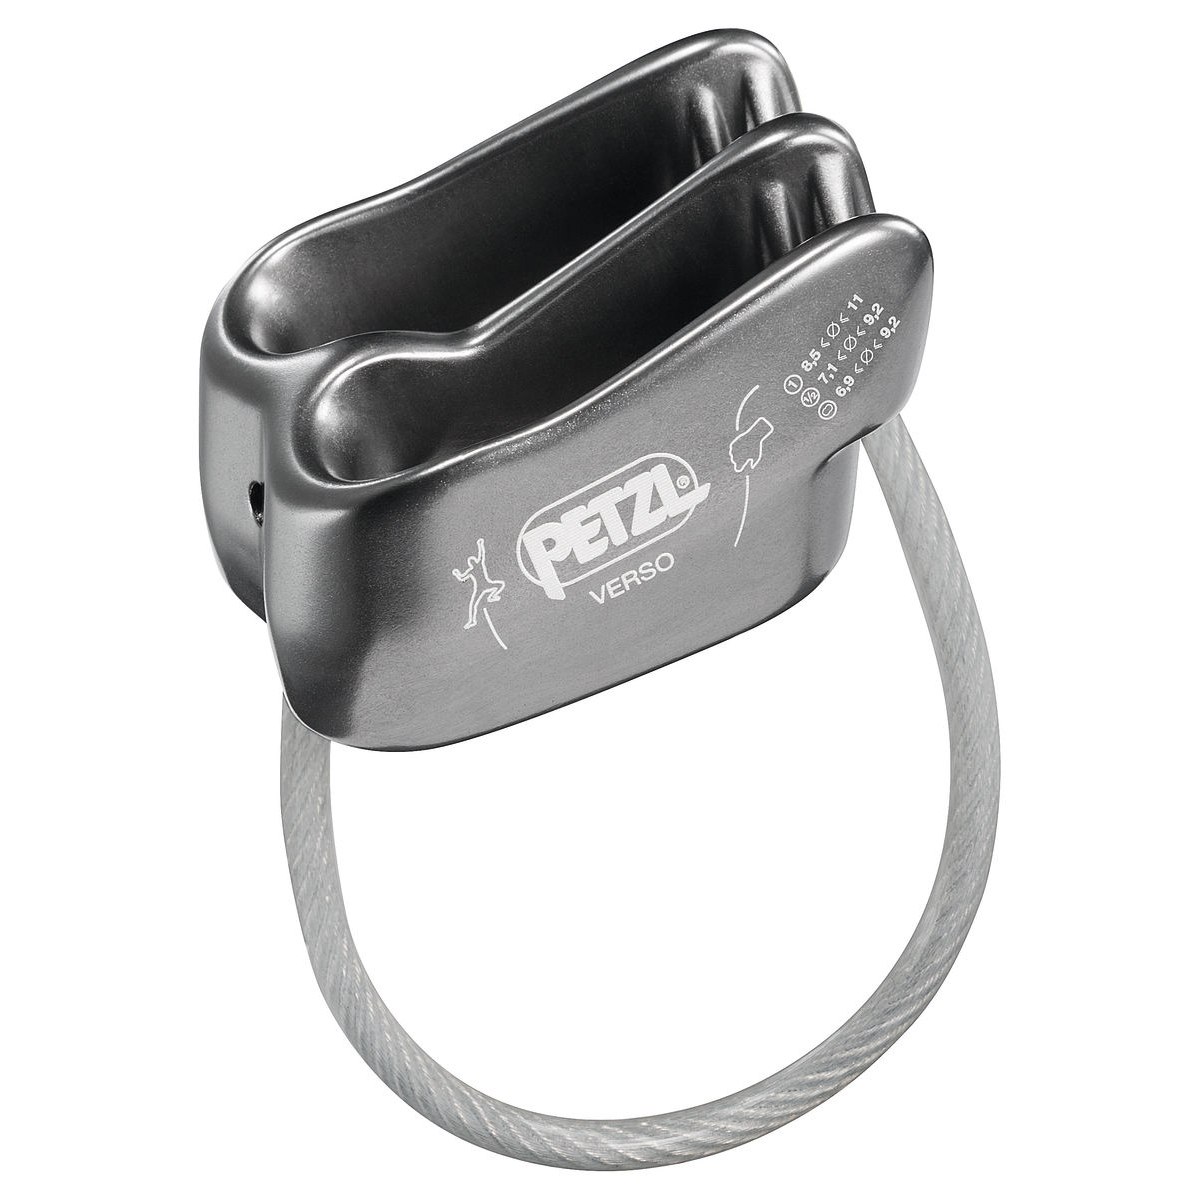 Produktbild von Petzl Verso Sicherungsgerät - grau